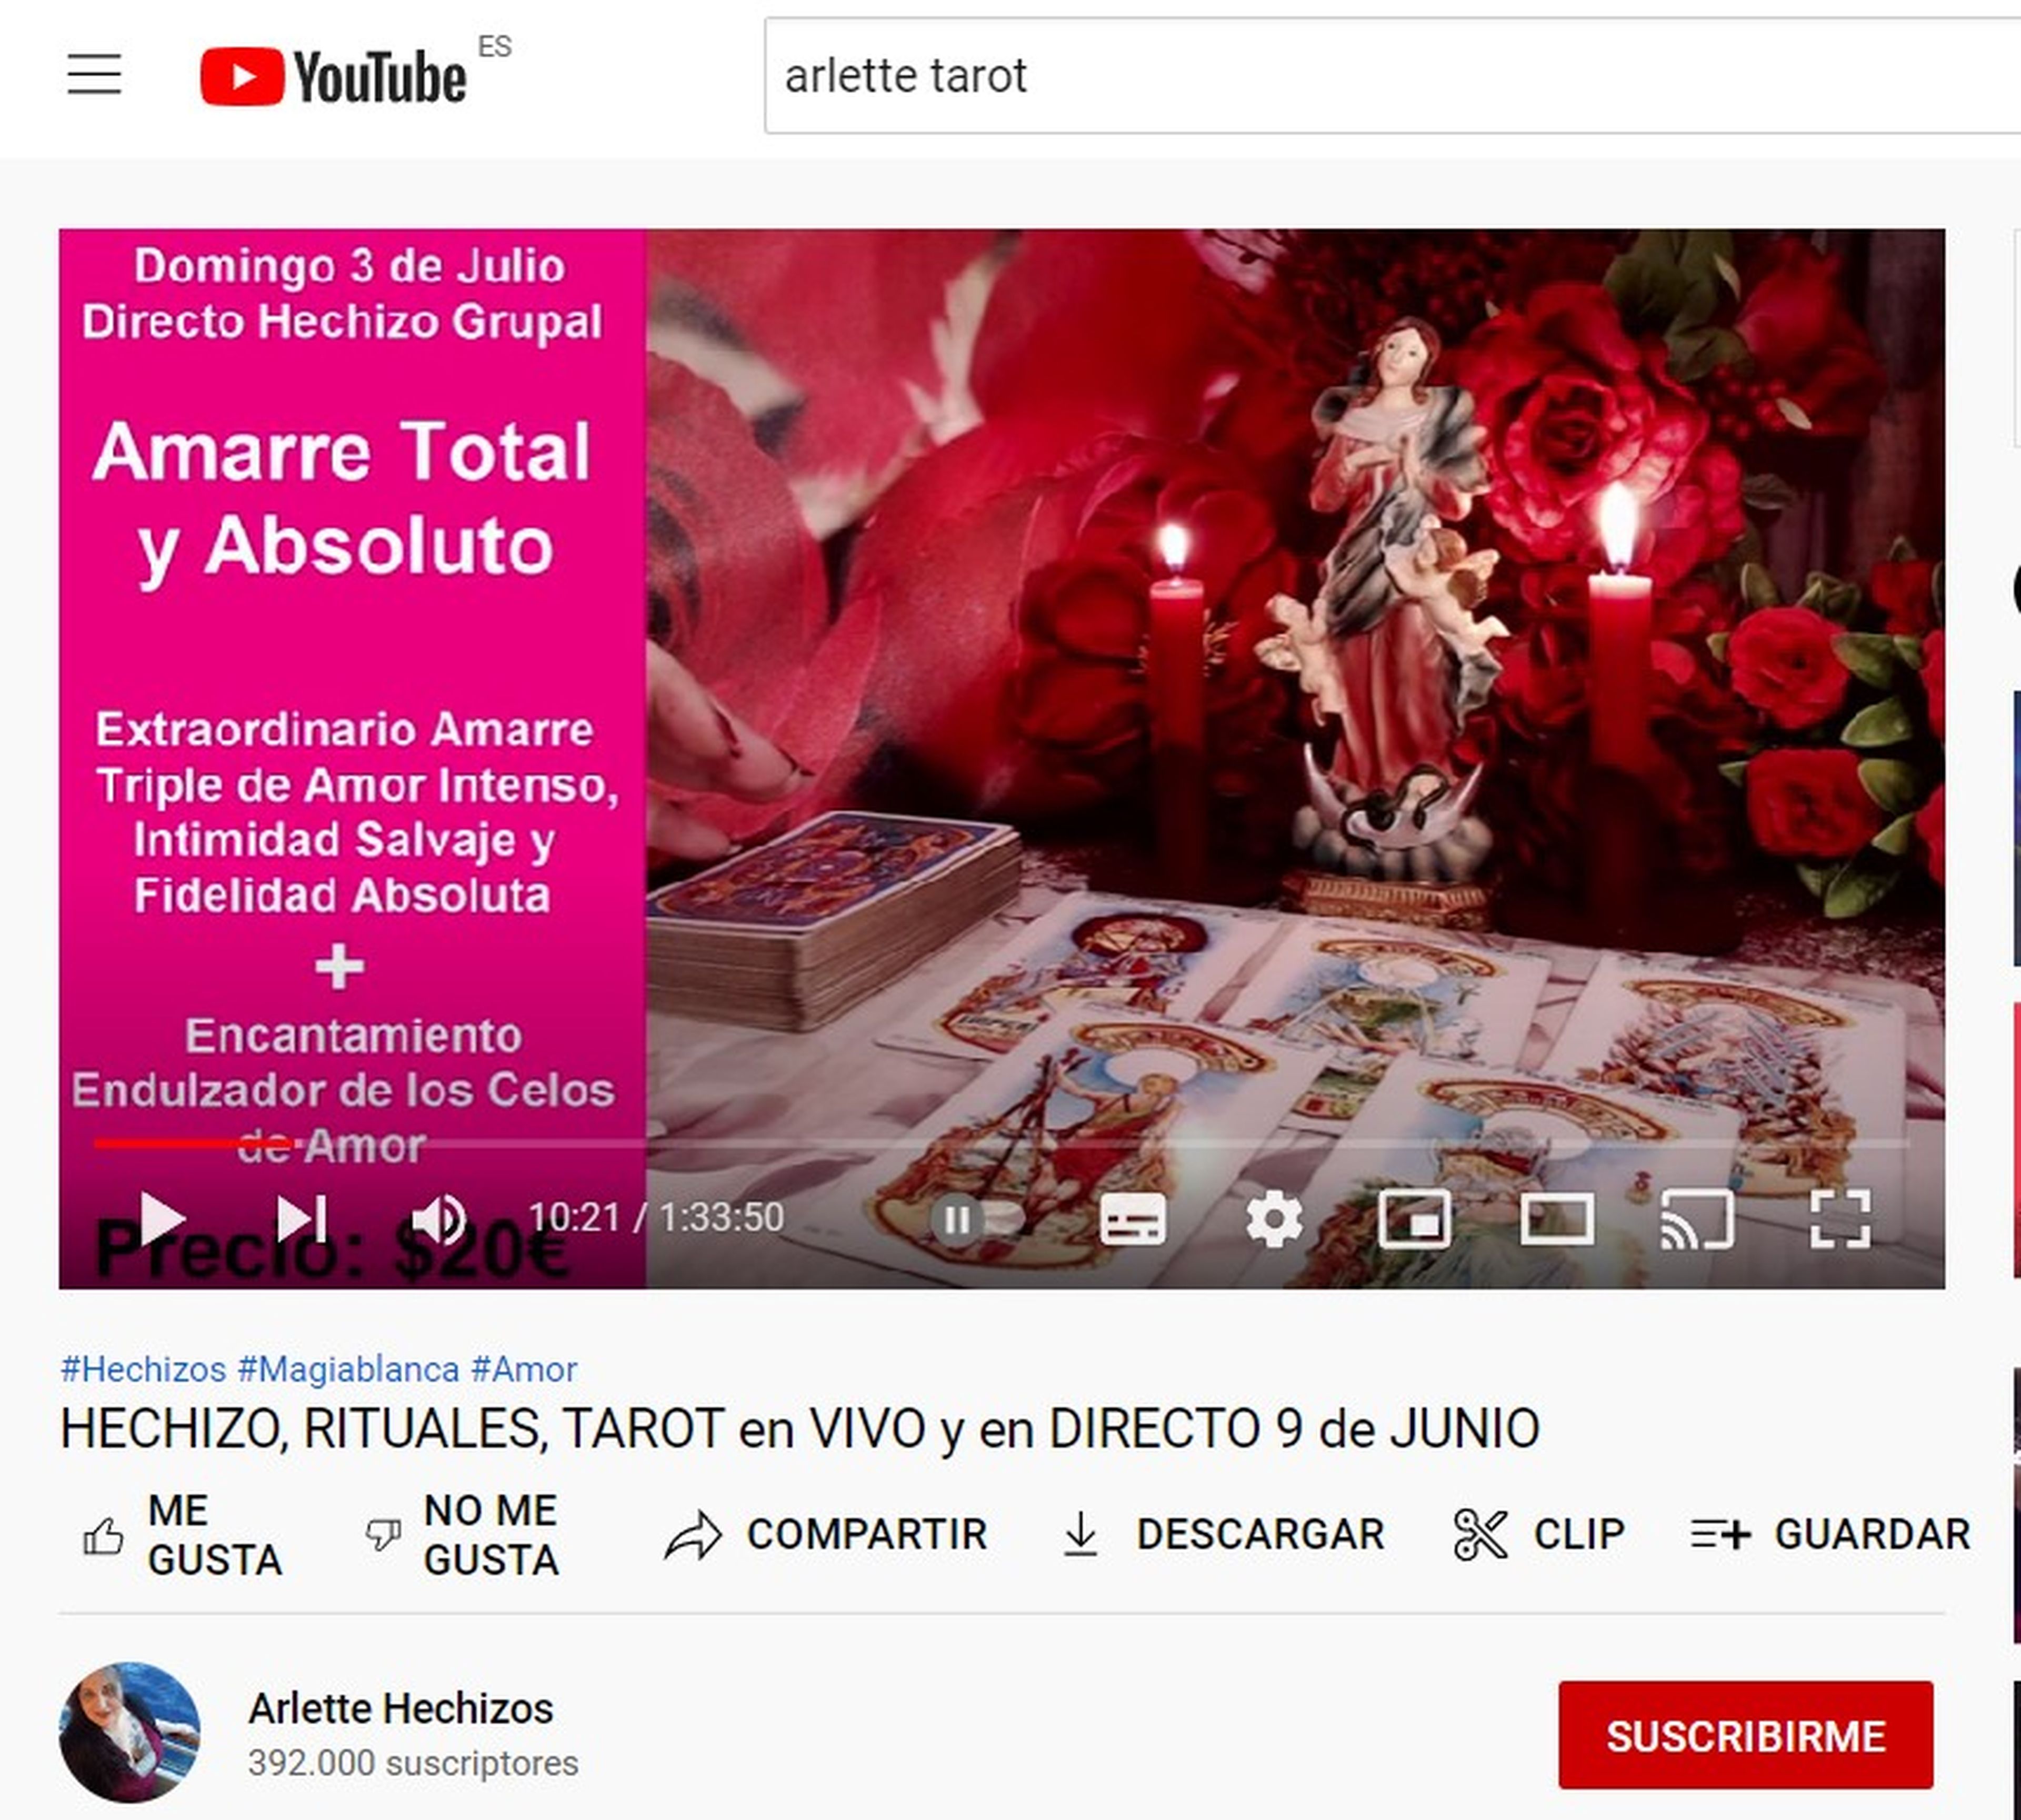 El canal Arlette Hechizos acumuló más de 150.000 euros en comentarios pagados en 2021.